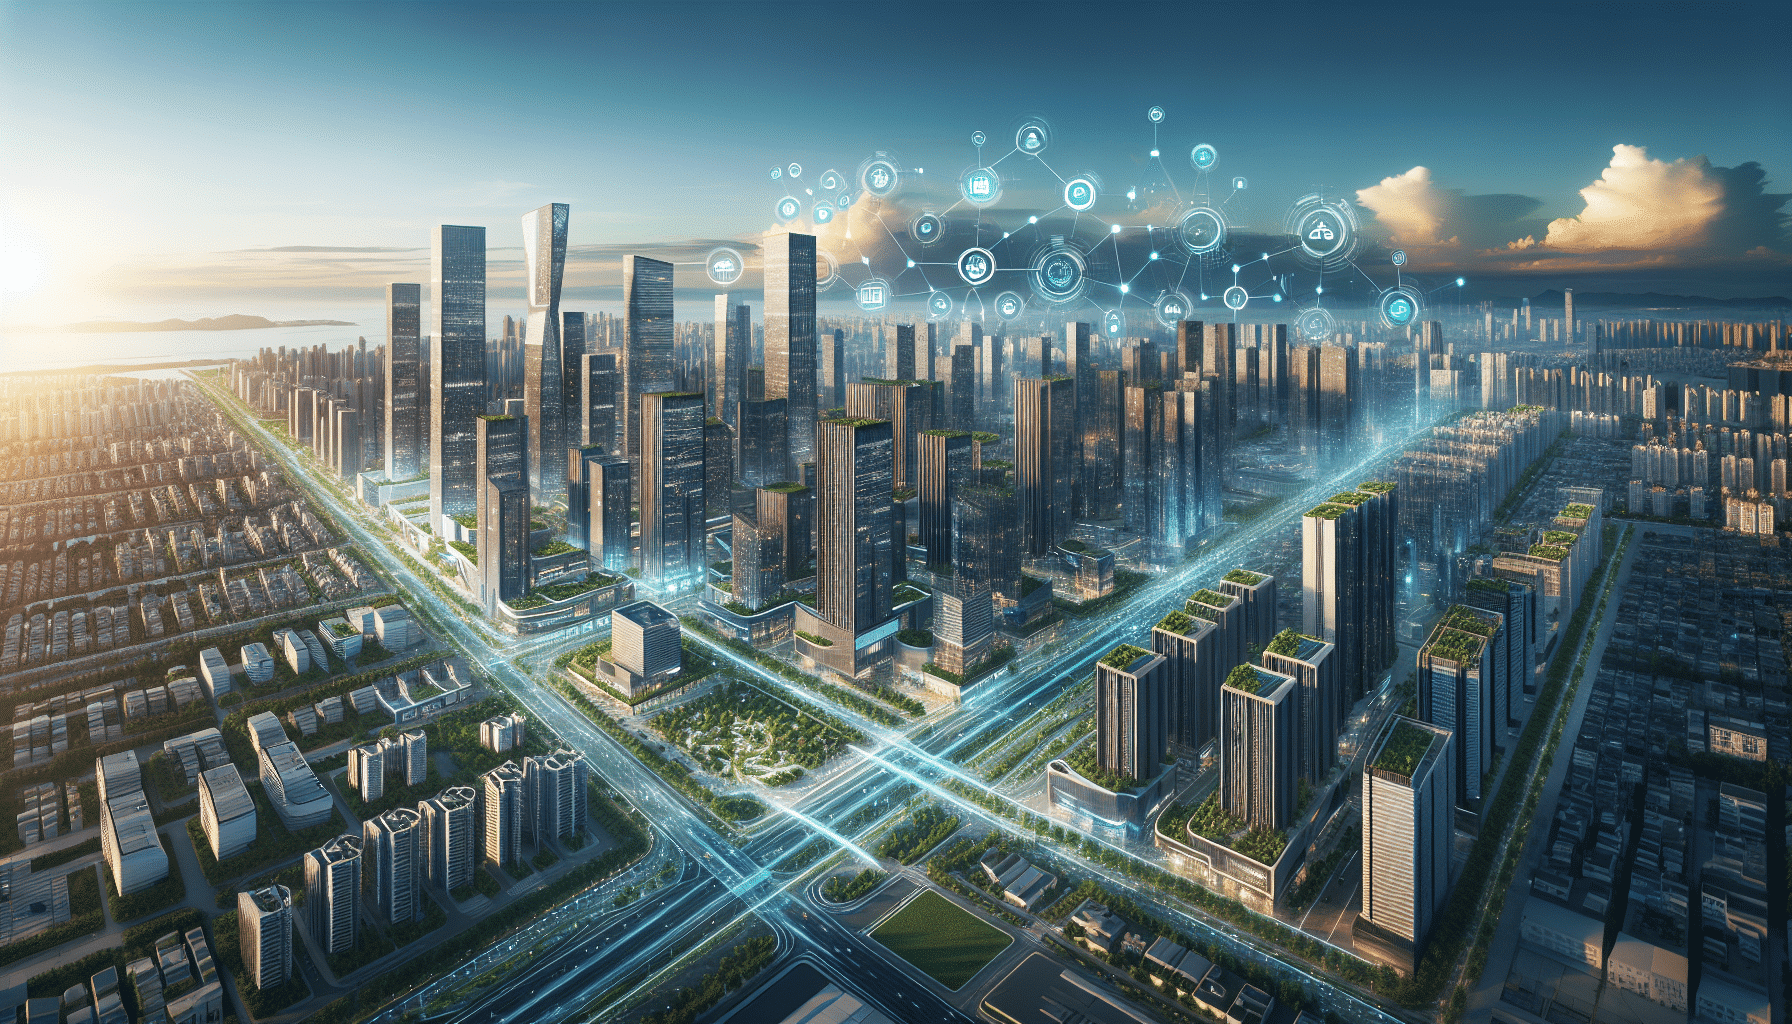 el futuro urbano desvelado: ciudades inteligentes - descubre cómo las ciudades inteligentes están revelando el futuro urbano y mejorando la calidad de vida de sus habitantes.